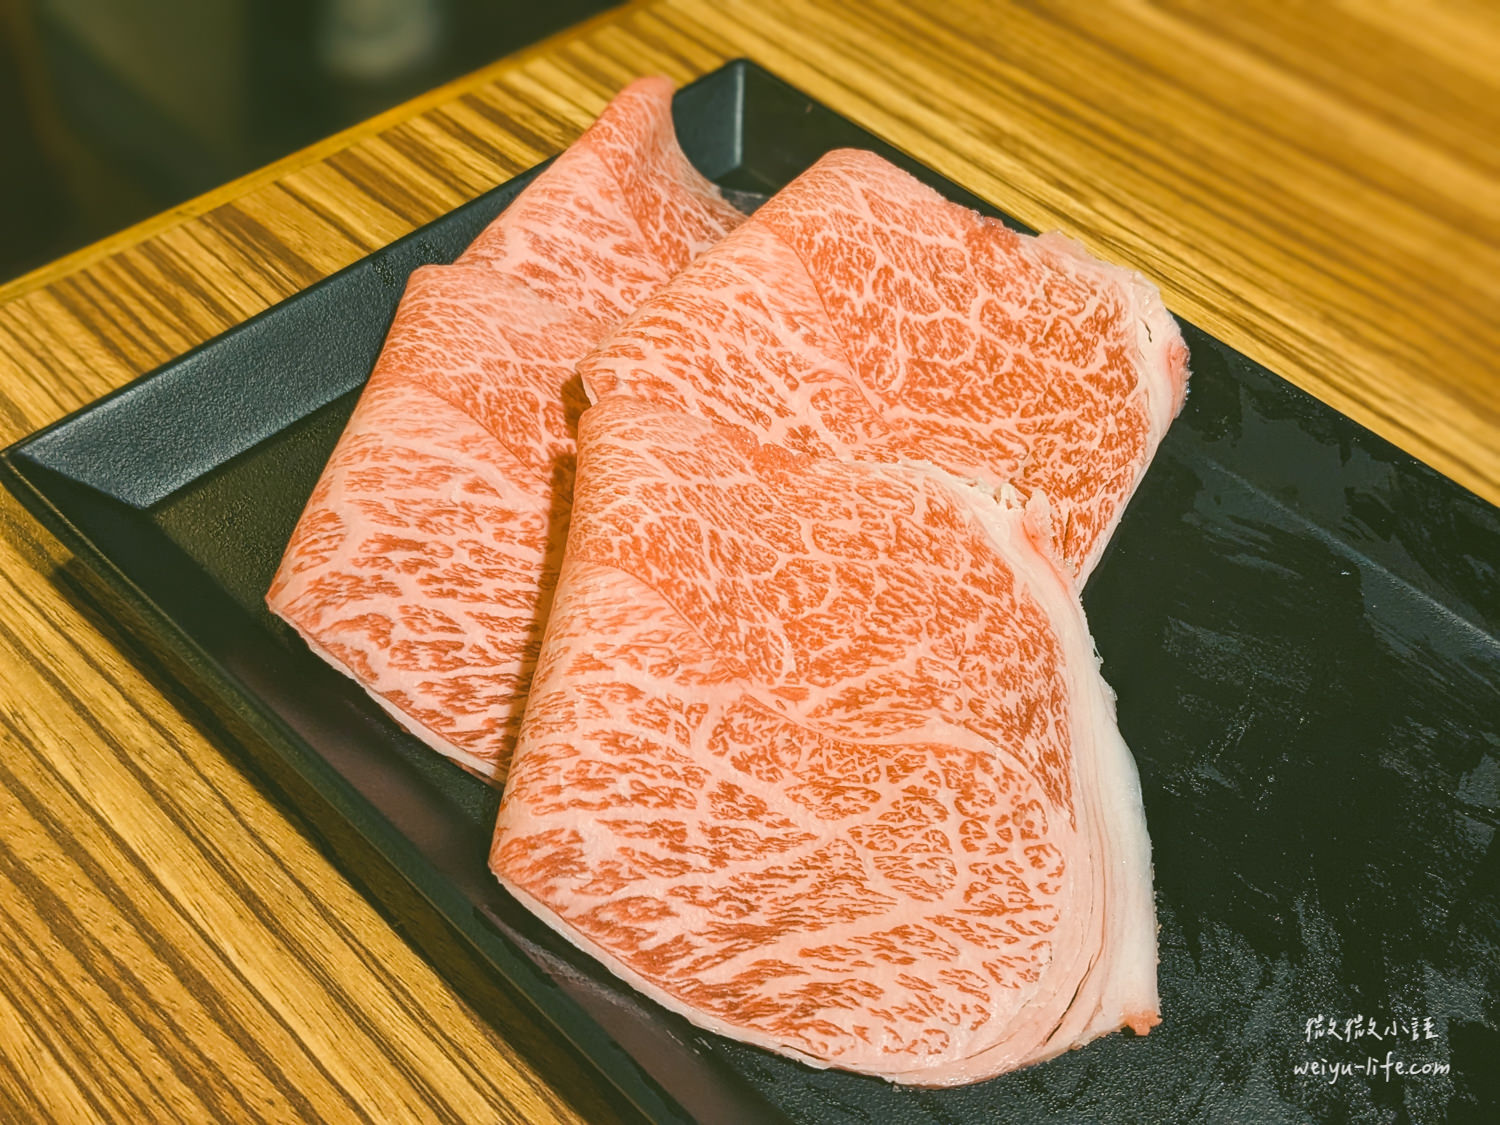 木村堂-燒肉食べ放題 日本和牛霜降